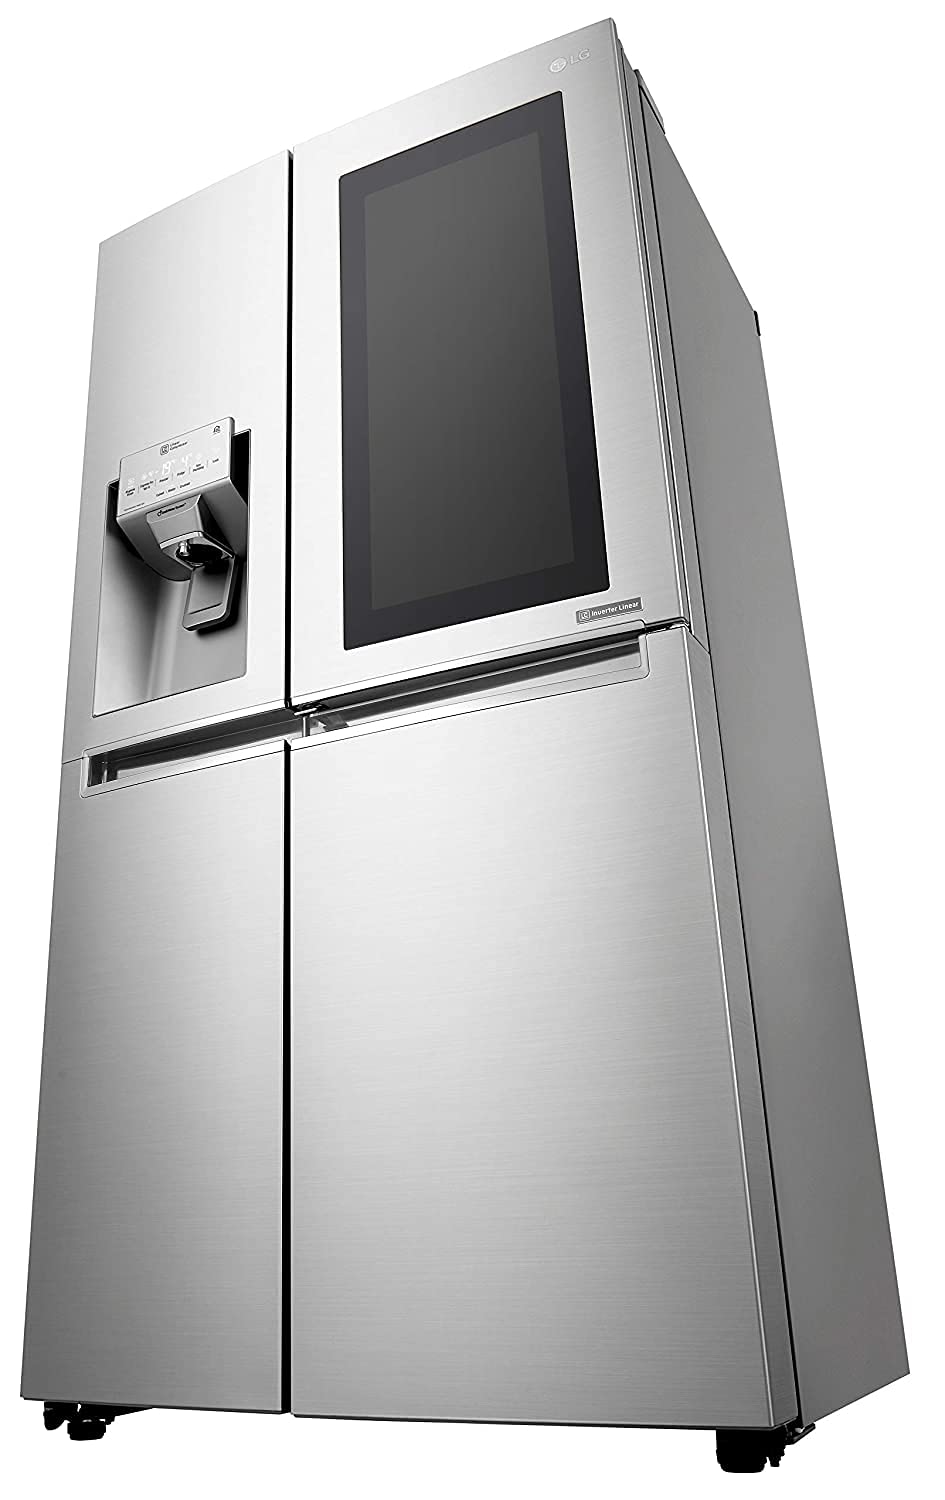 A lg refrigerators oblique angle shot